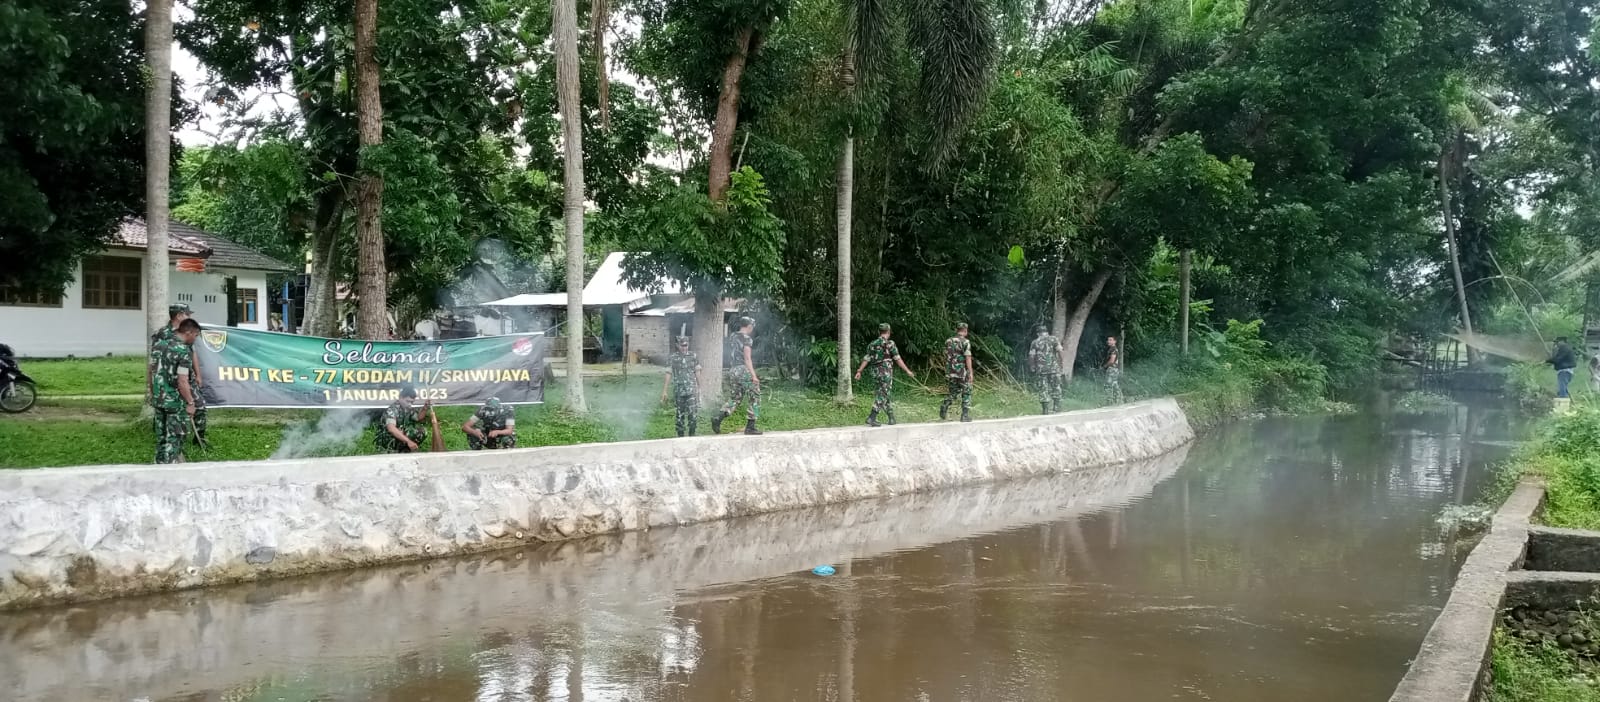 HUT Kodam II/Sriwijaya Ke-77, Kodim 0402/OKI Karya Bakti Pembersihan Bantaran Sungai dan Rumah Ibadah